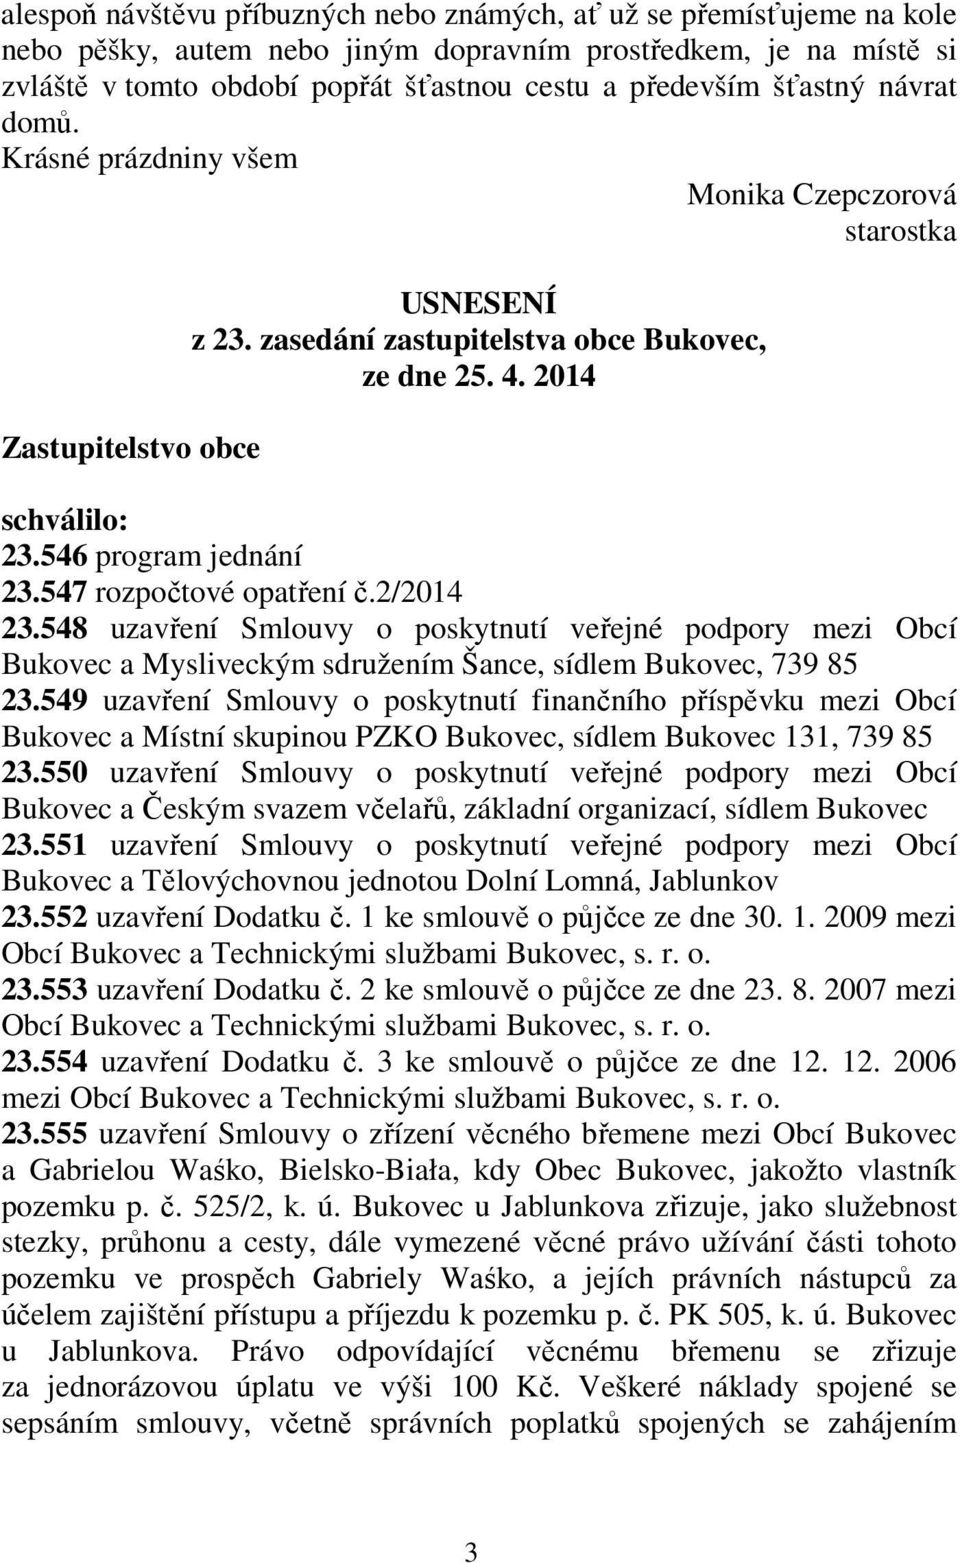 546 program jednání 23.547 rozpočtové opatření č.2/2014 23.548 uzavření Smlouvy o poskytnutí veřejné podpory mezi Obcí Bukovec a Mysliveckým sdružením Šance, sídlem Bukovec, 739 85 23.